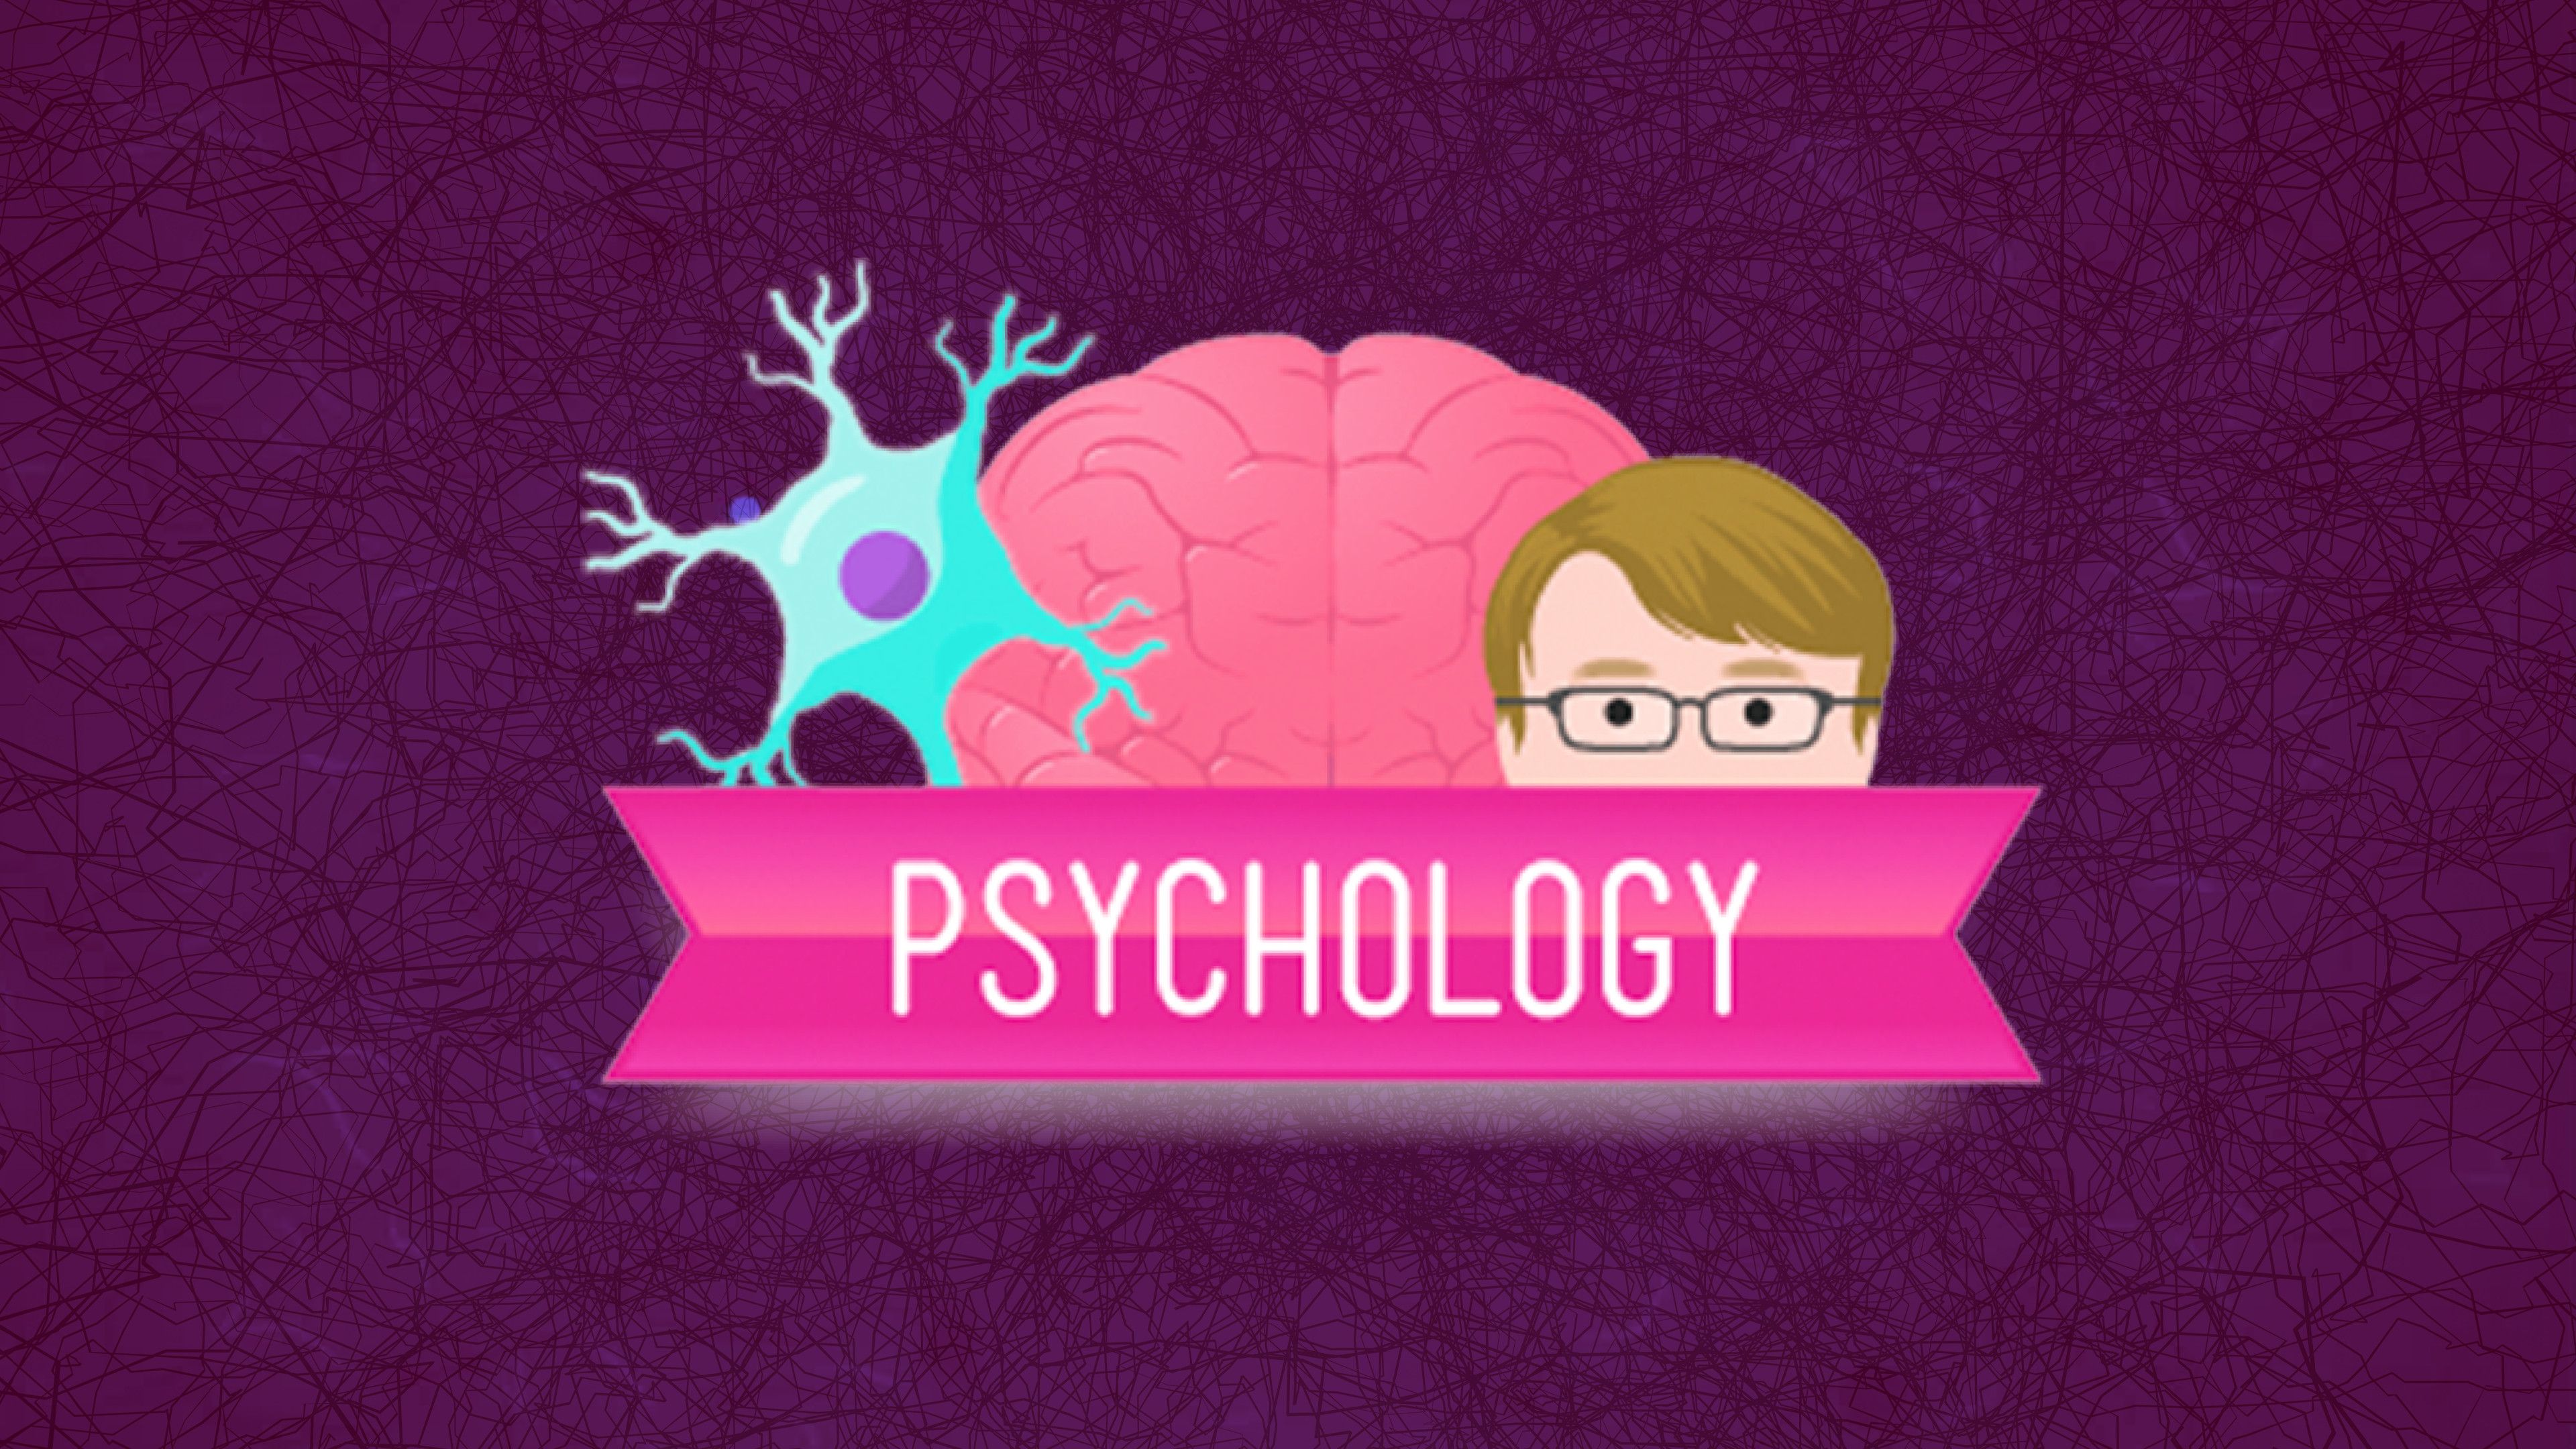 Crash Course: Psychology